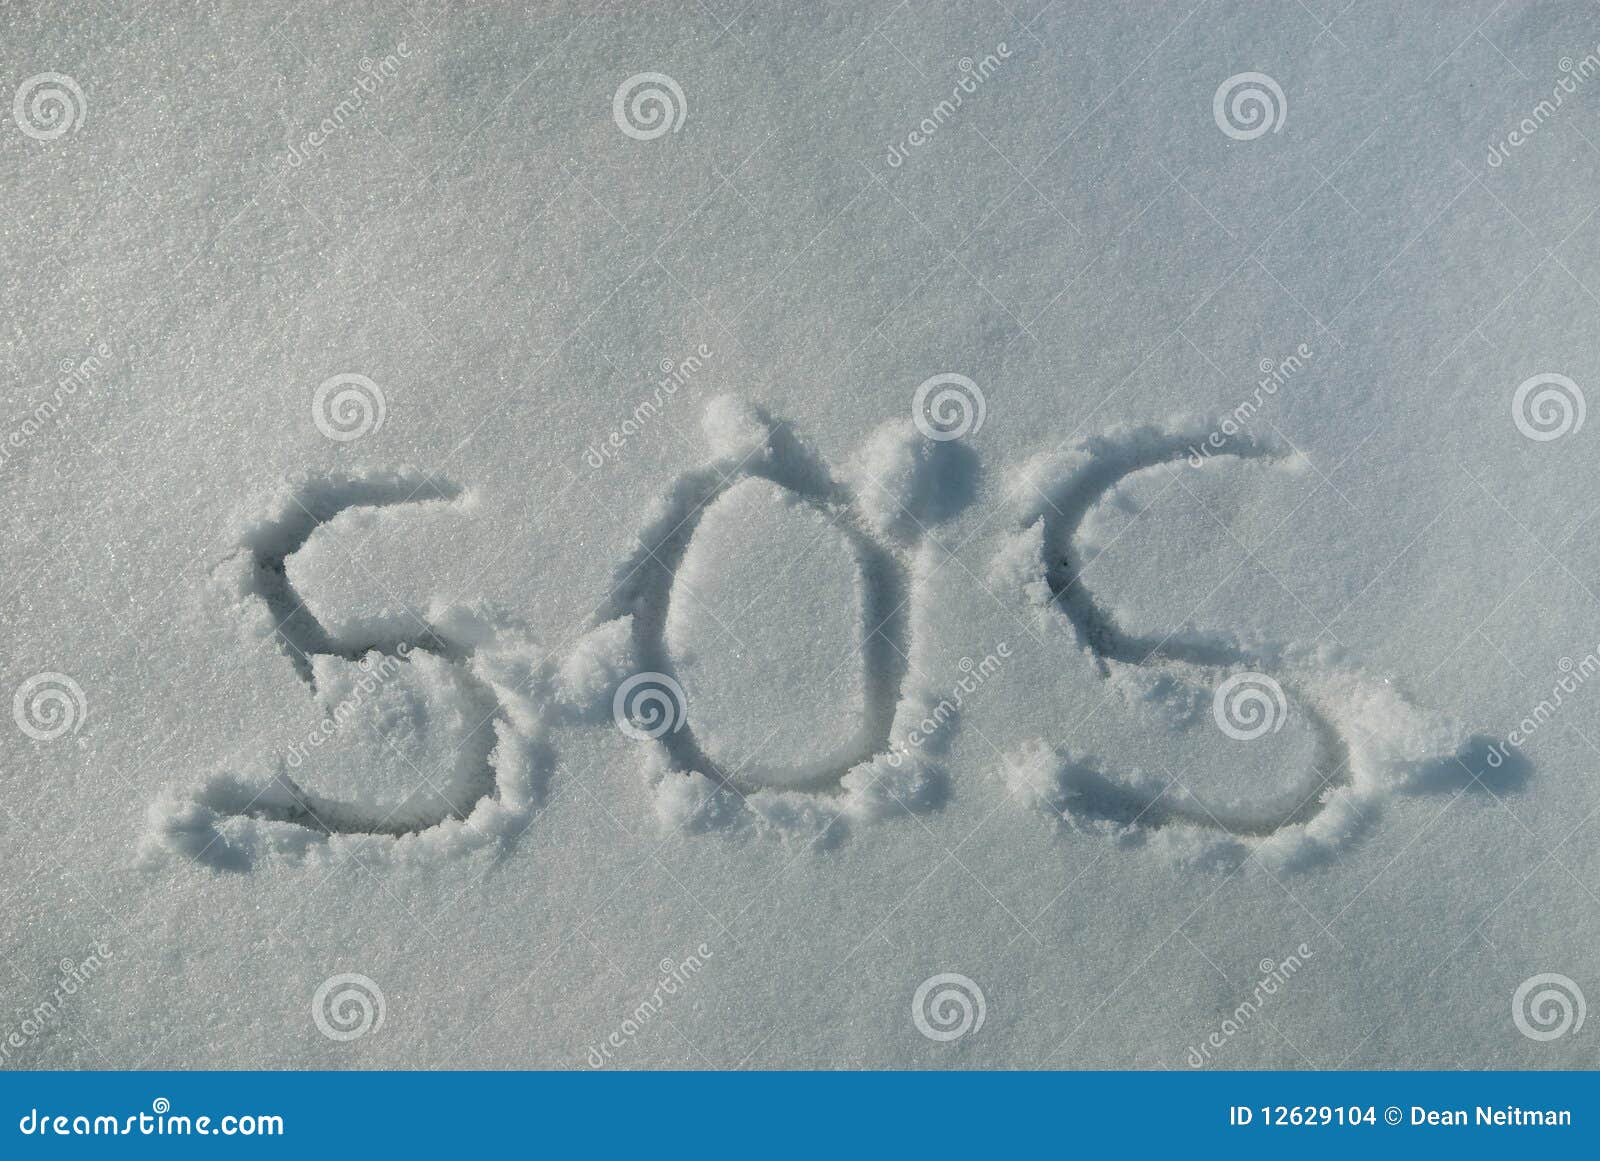 sos in snow